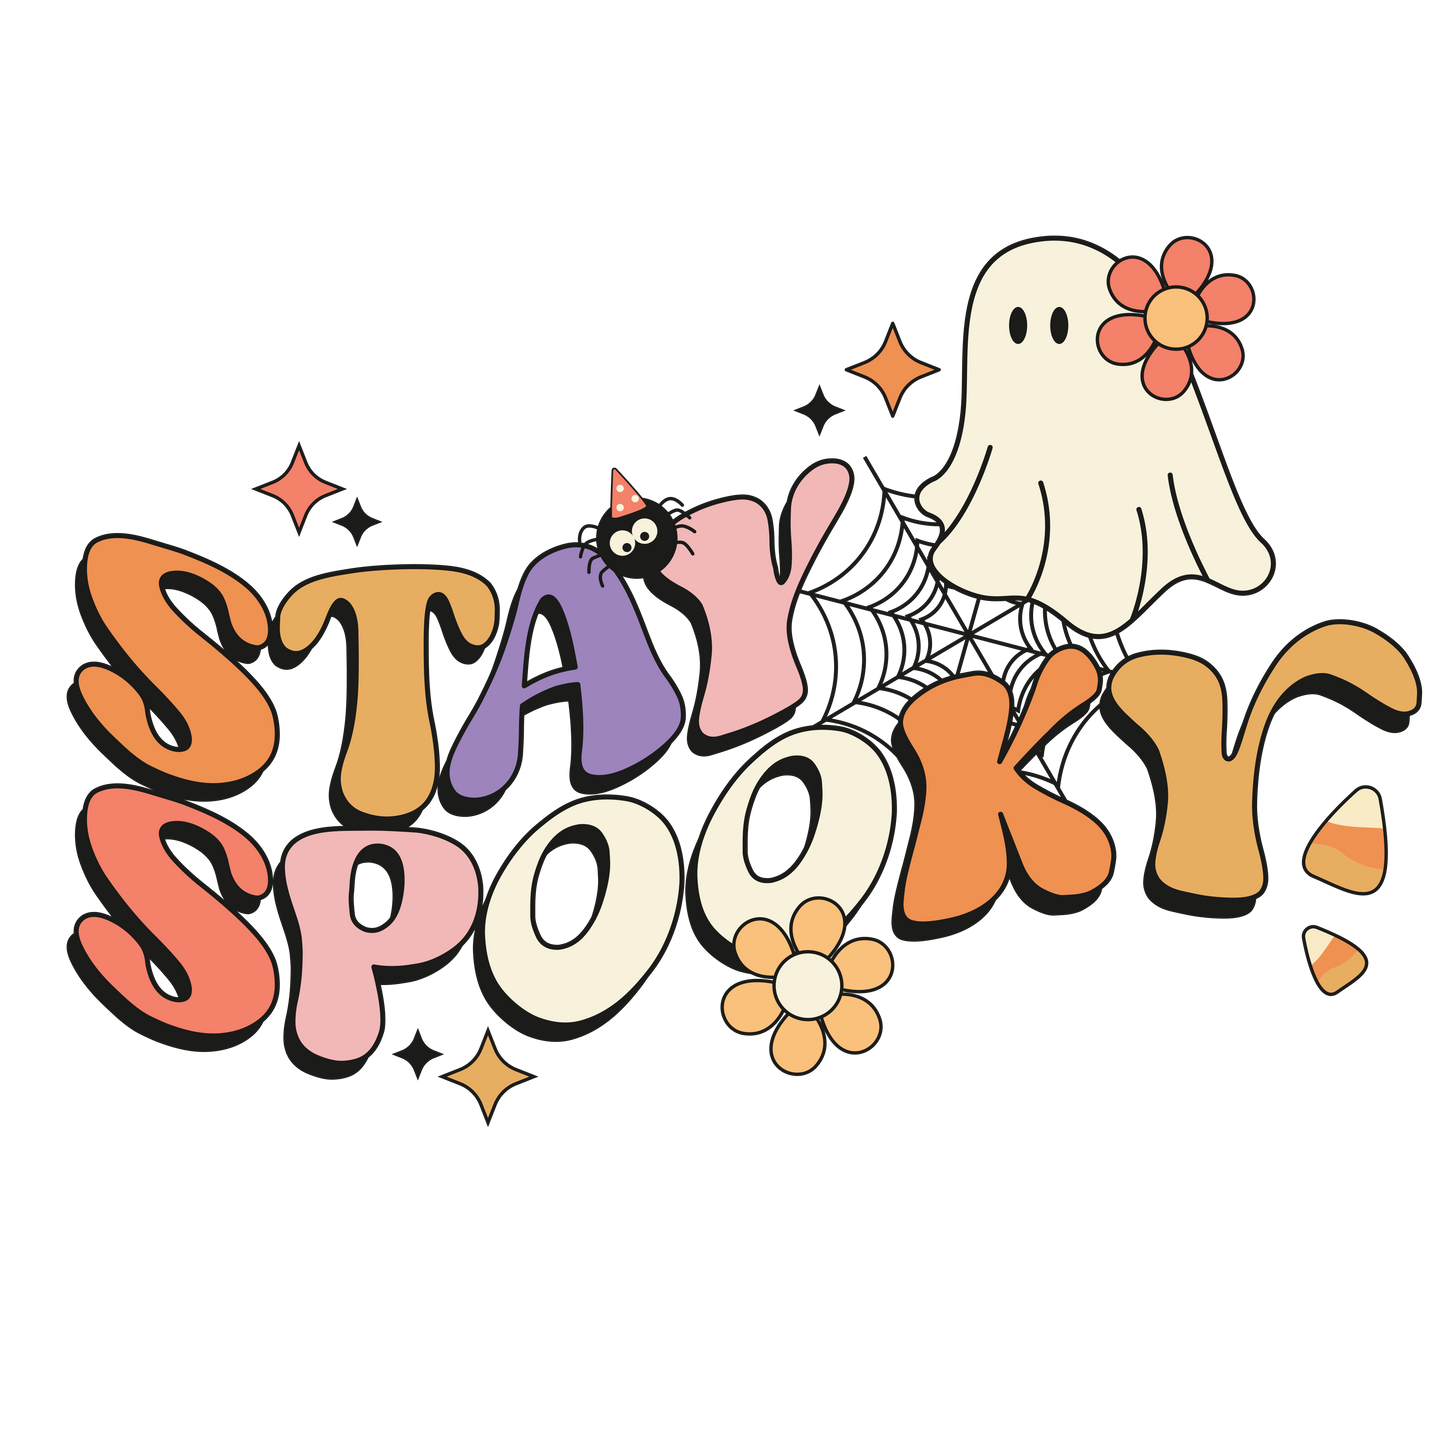 Stay Spooky Halloween DTF